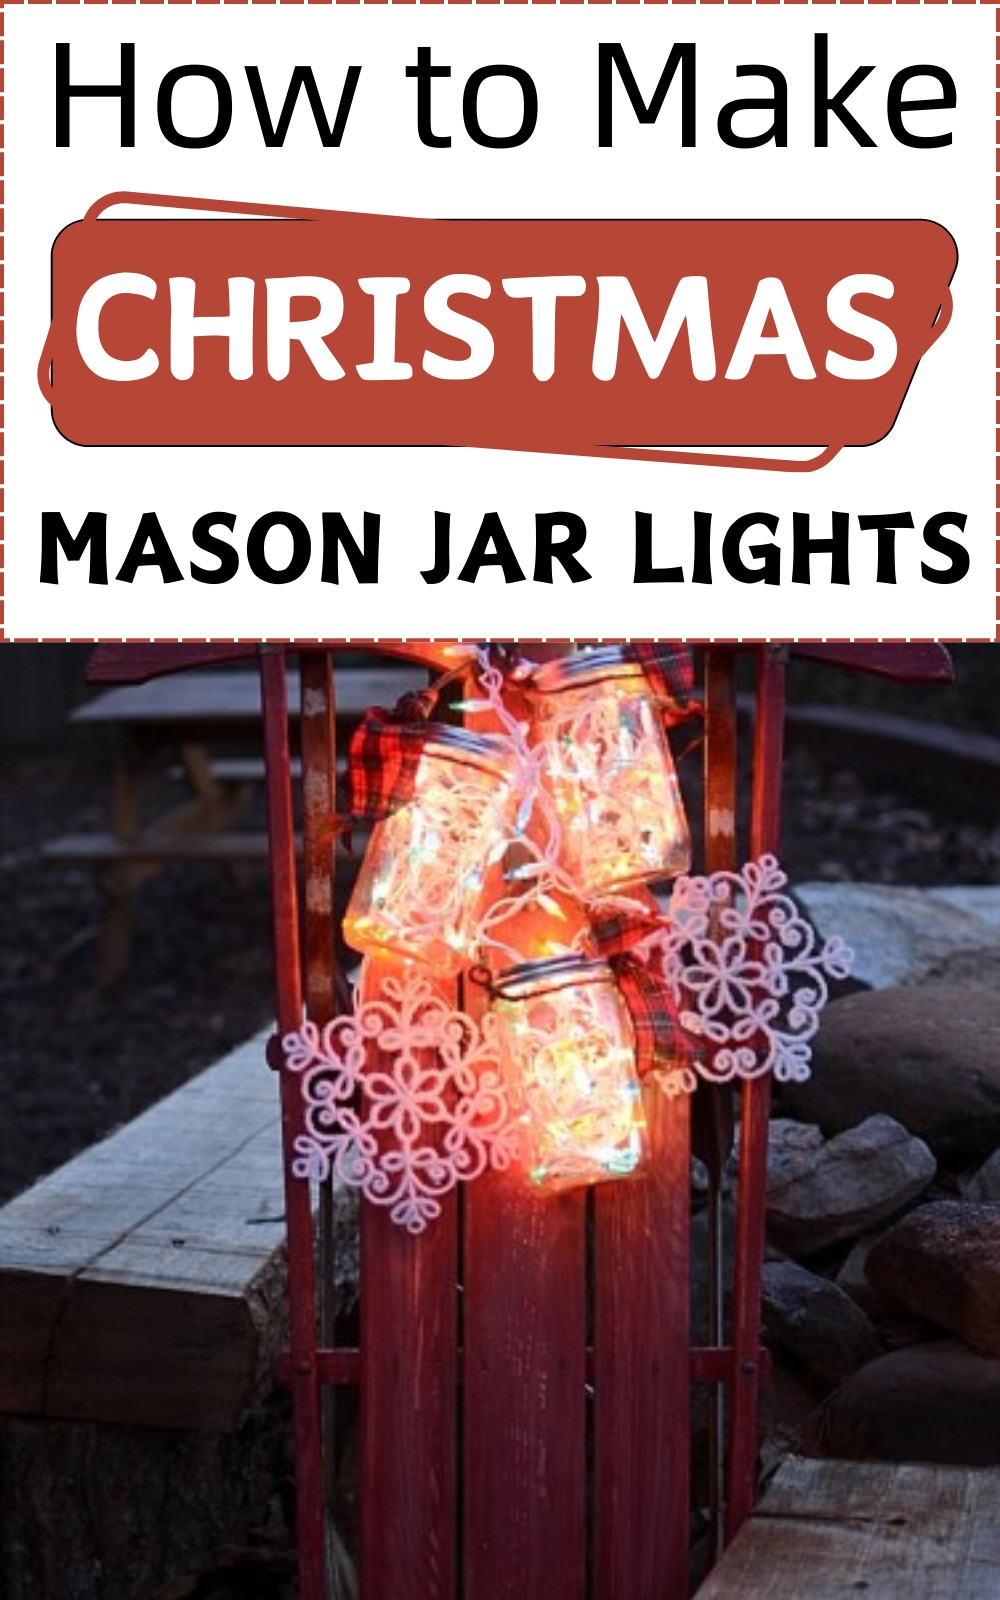 How to Make Christmas Mason Jar Lights